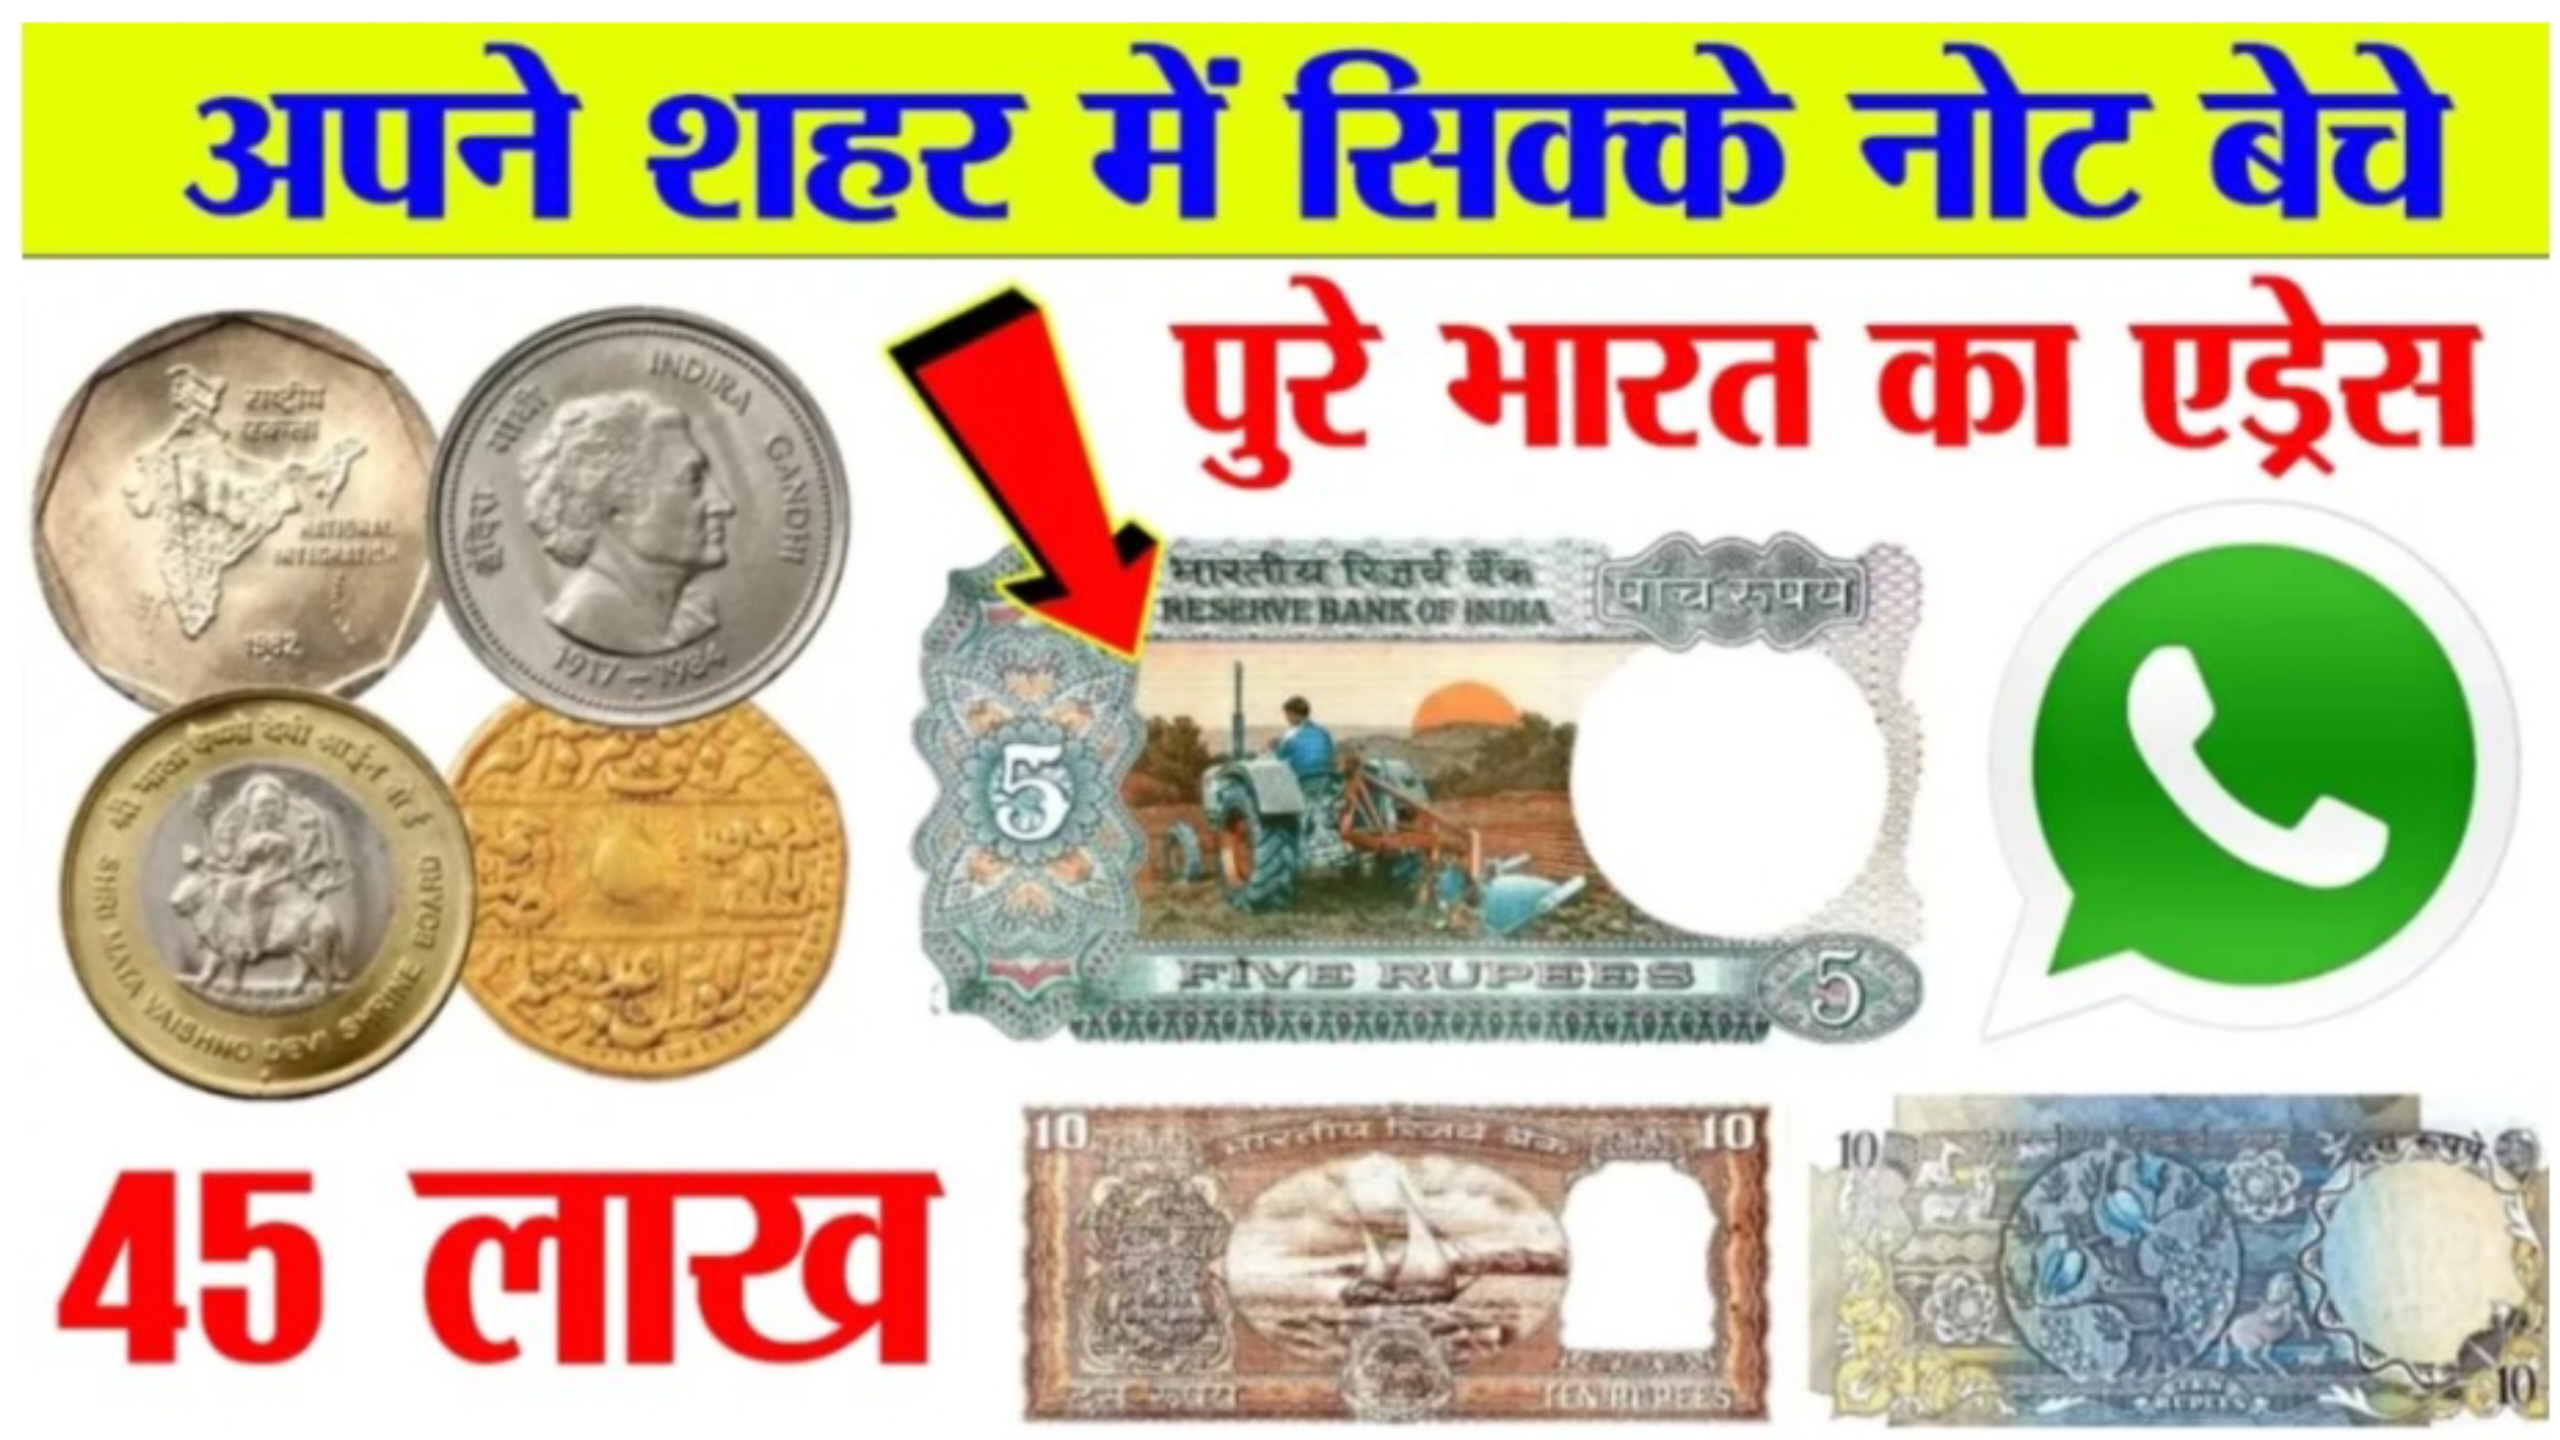 Old Note Sell : राजा बना देगा ये लकी नंम्बर का नोट कीमत 25 लाख रुपये यहां देखे बेचने का सही तरीका